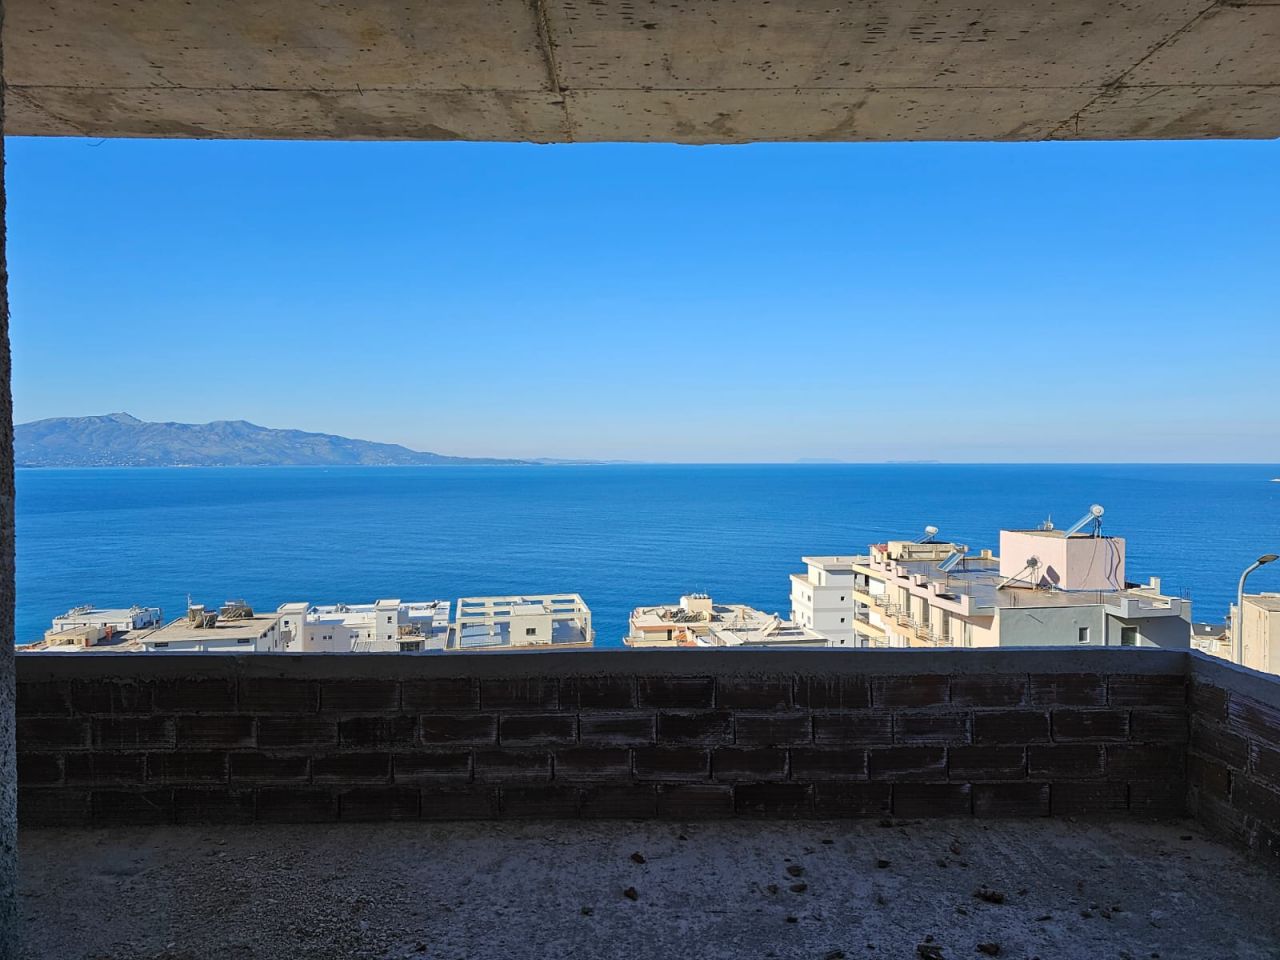 Nowe Mieszkanie Na Sprzedaż W Sarandzie W Albanii